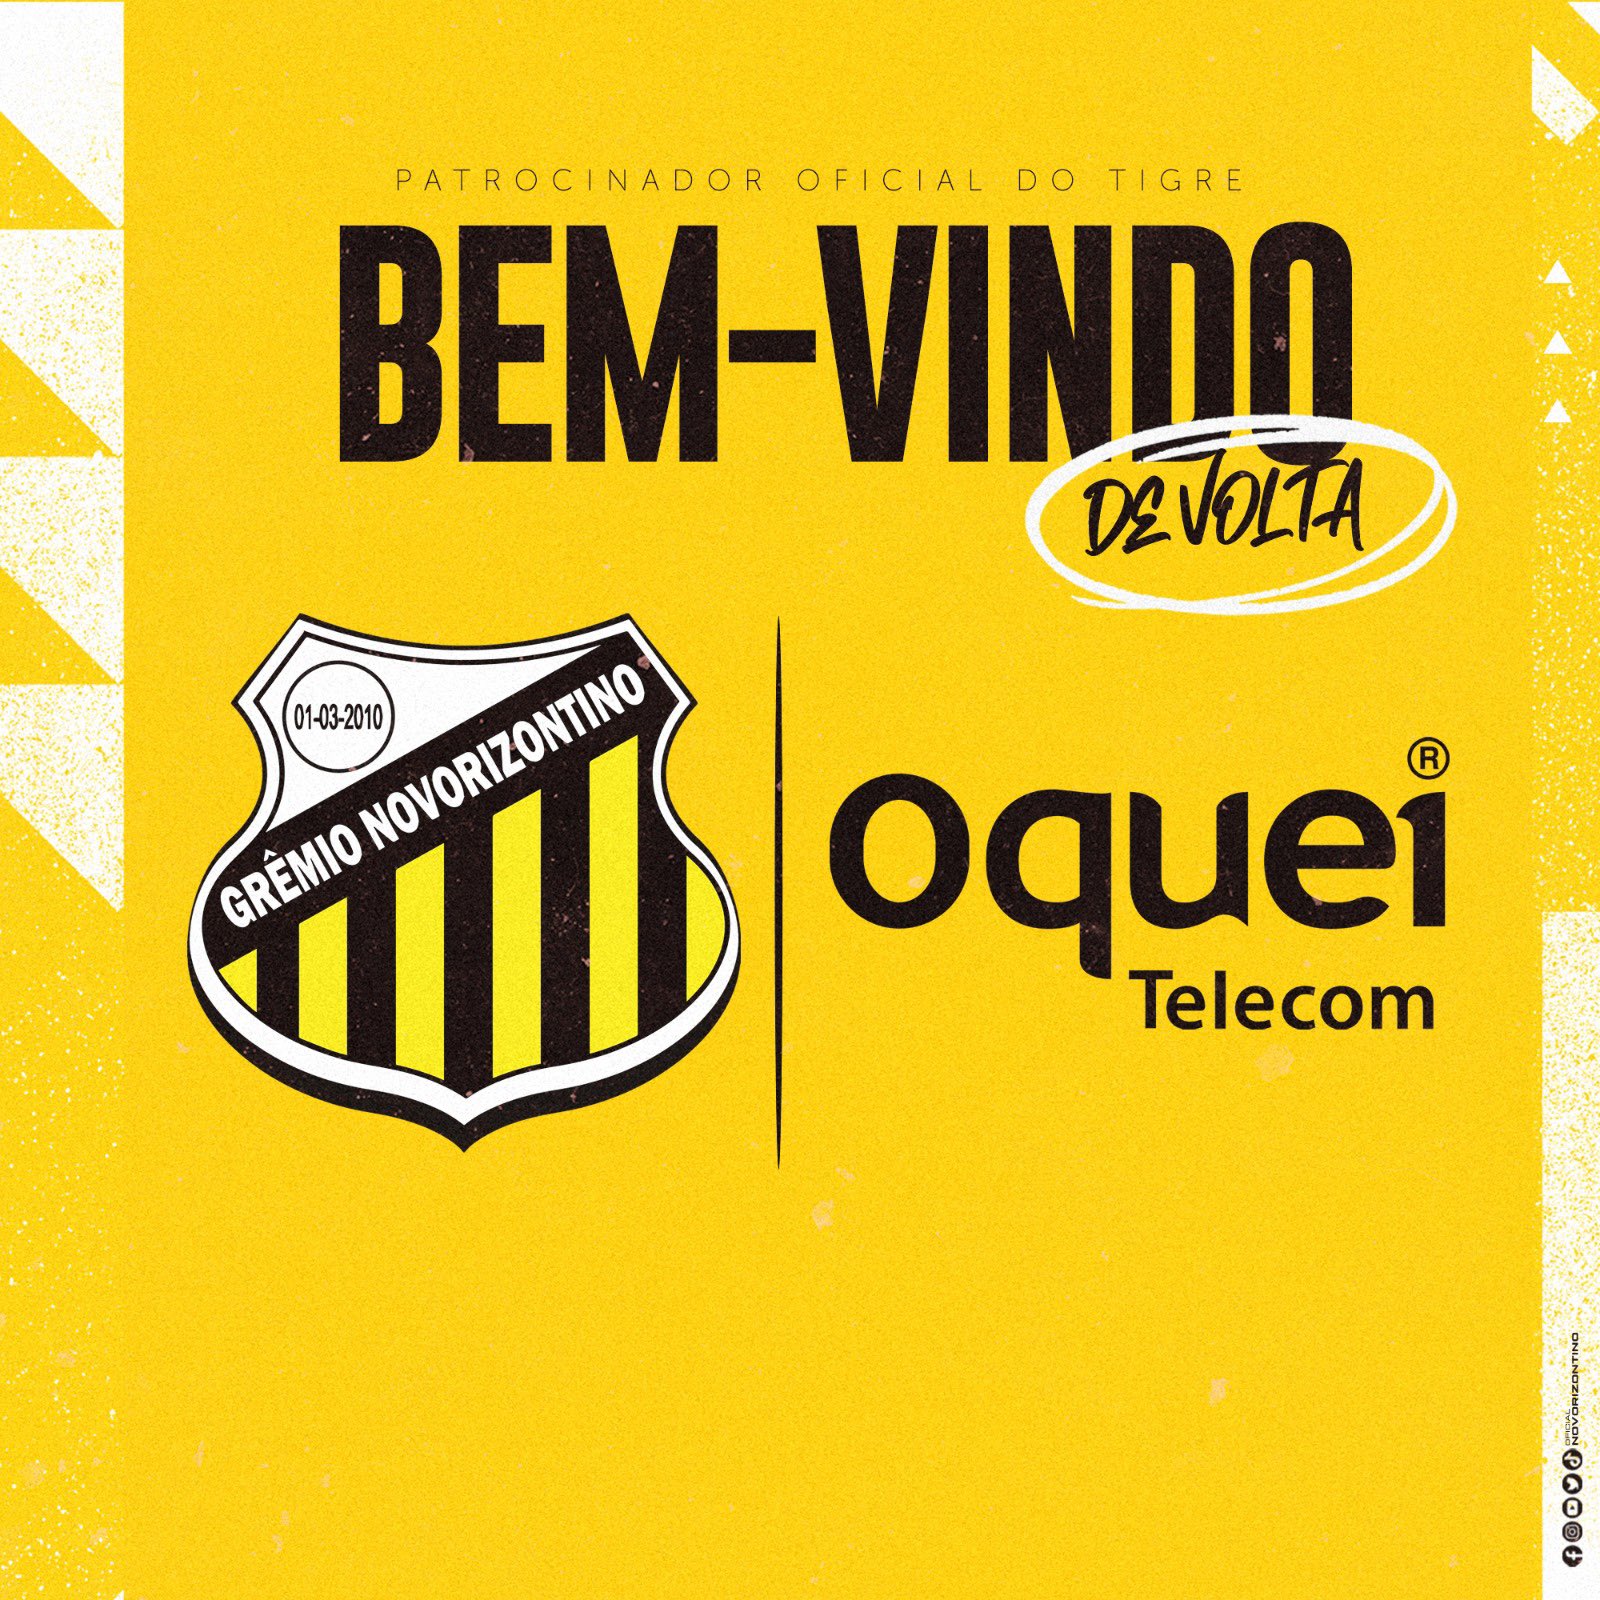 Grêmio Novorizontino é convidado a conhecer o Futebol de Base Africano –  Grêmio Novorizontino